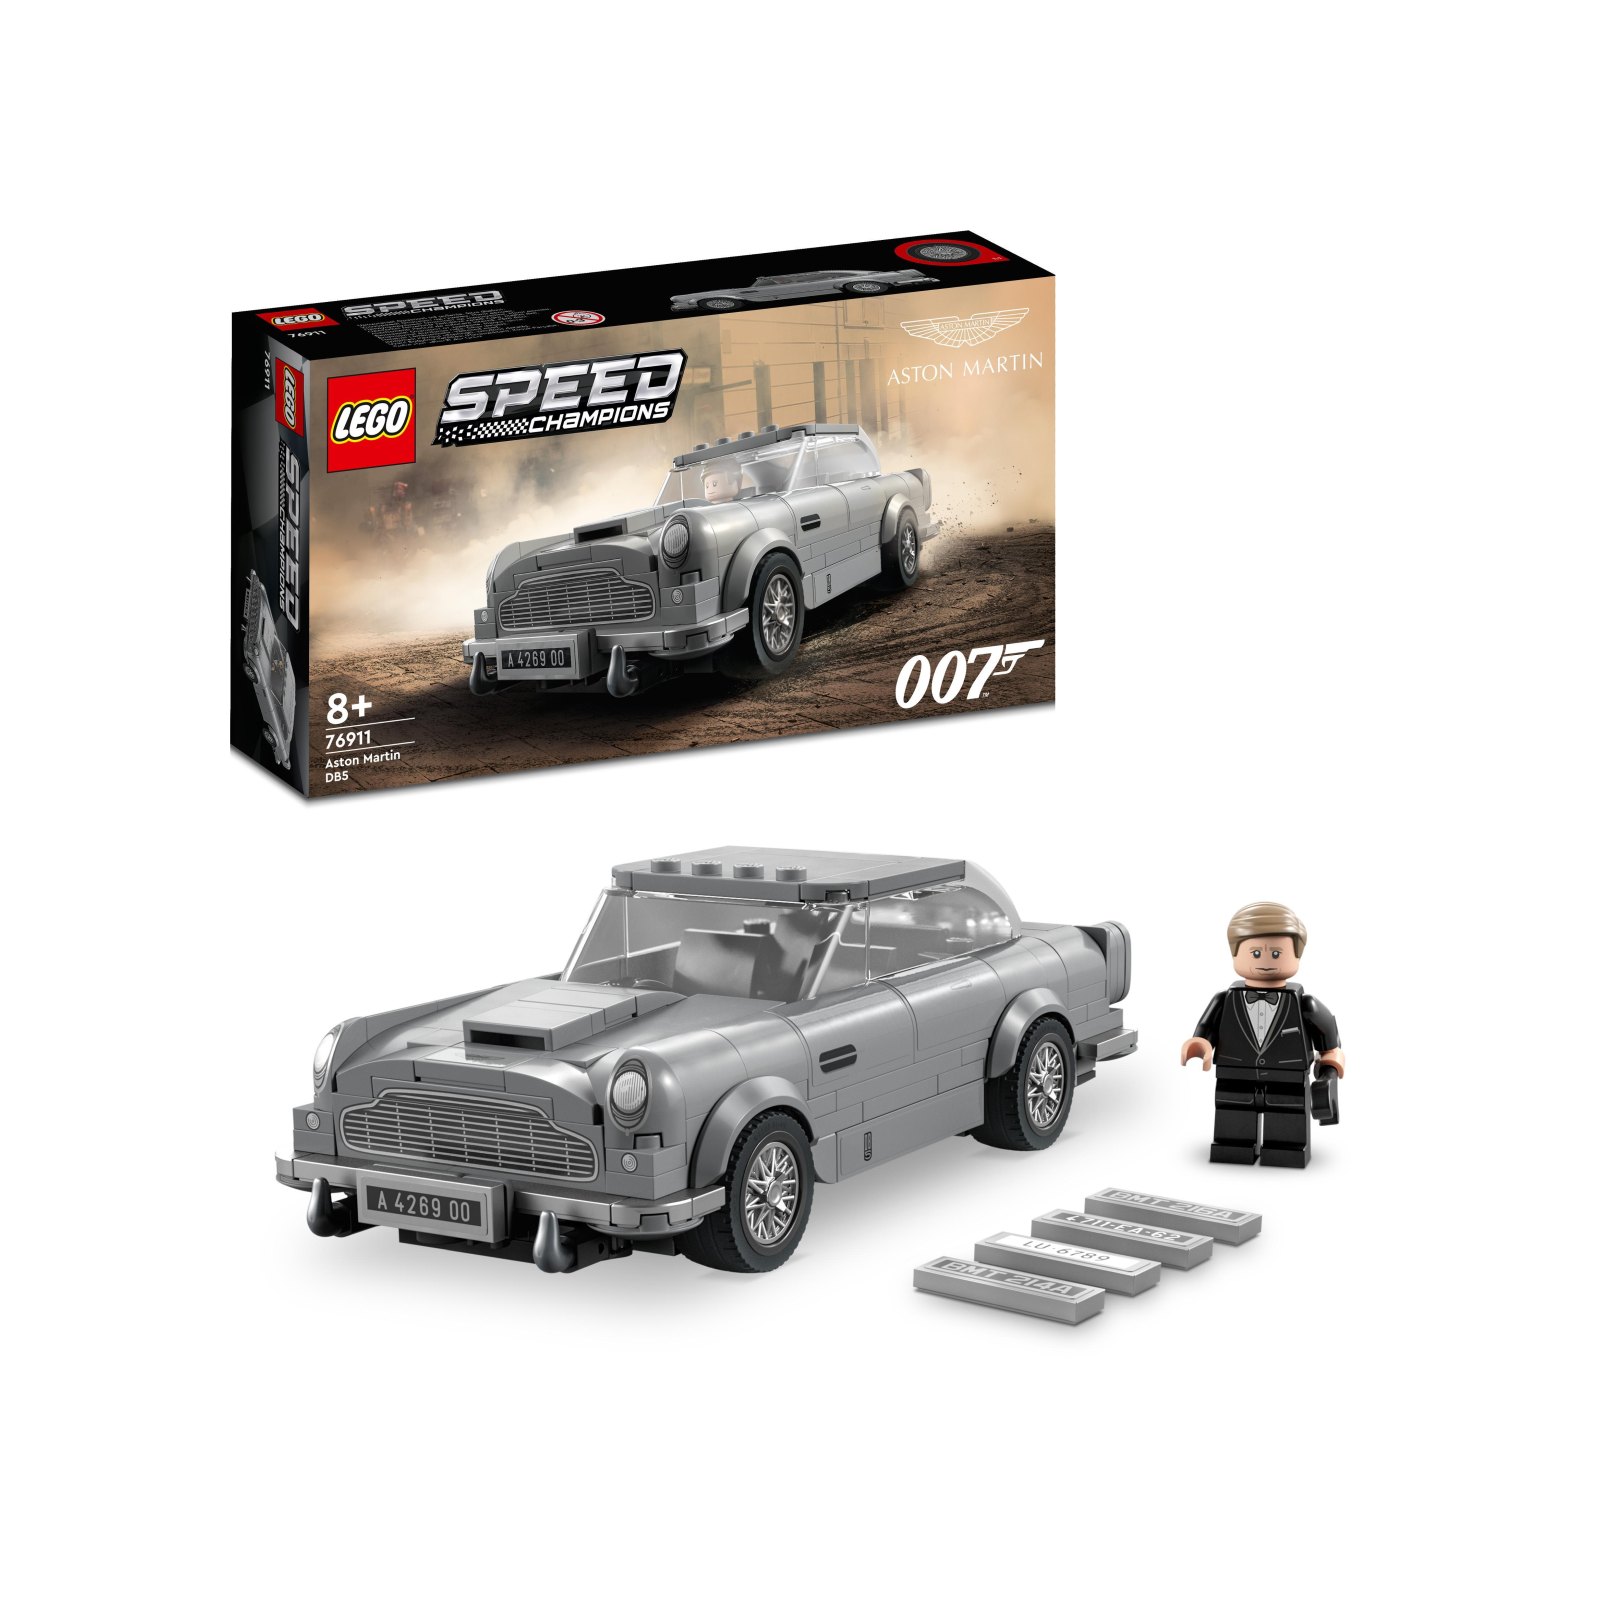 Lego speed champions 76911 007 aston martin db5, modellino auto giocattolo con minifigure james bond del film no time to die - LEGO SPEED CHAMPIONS